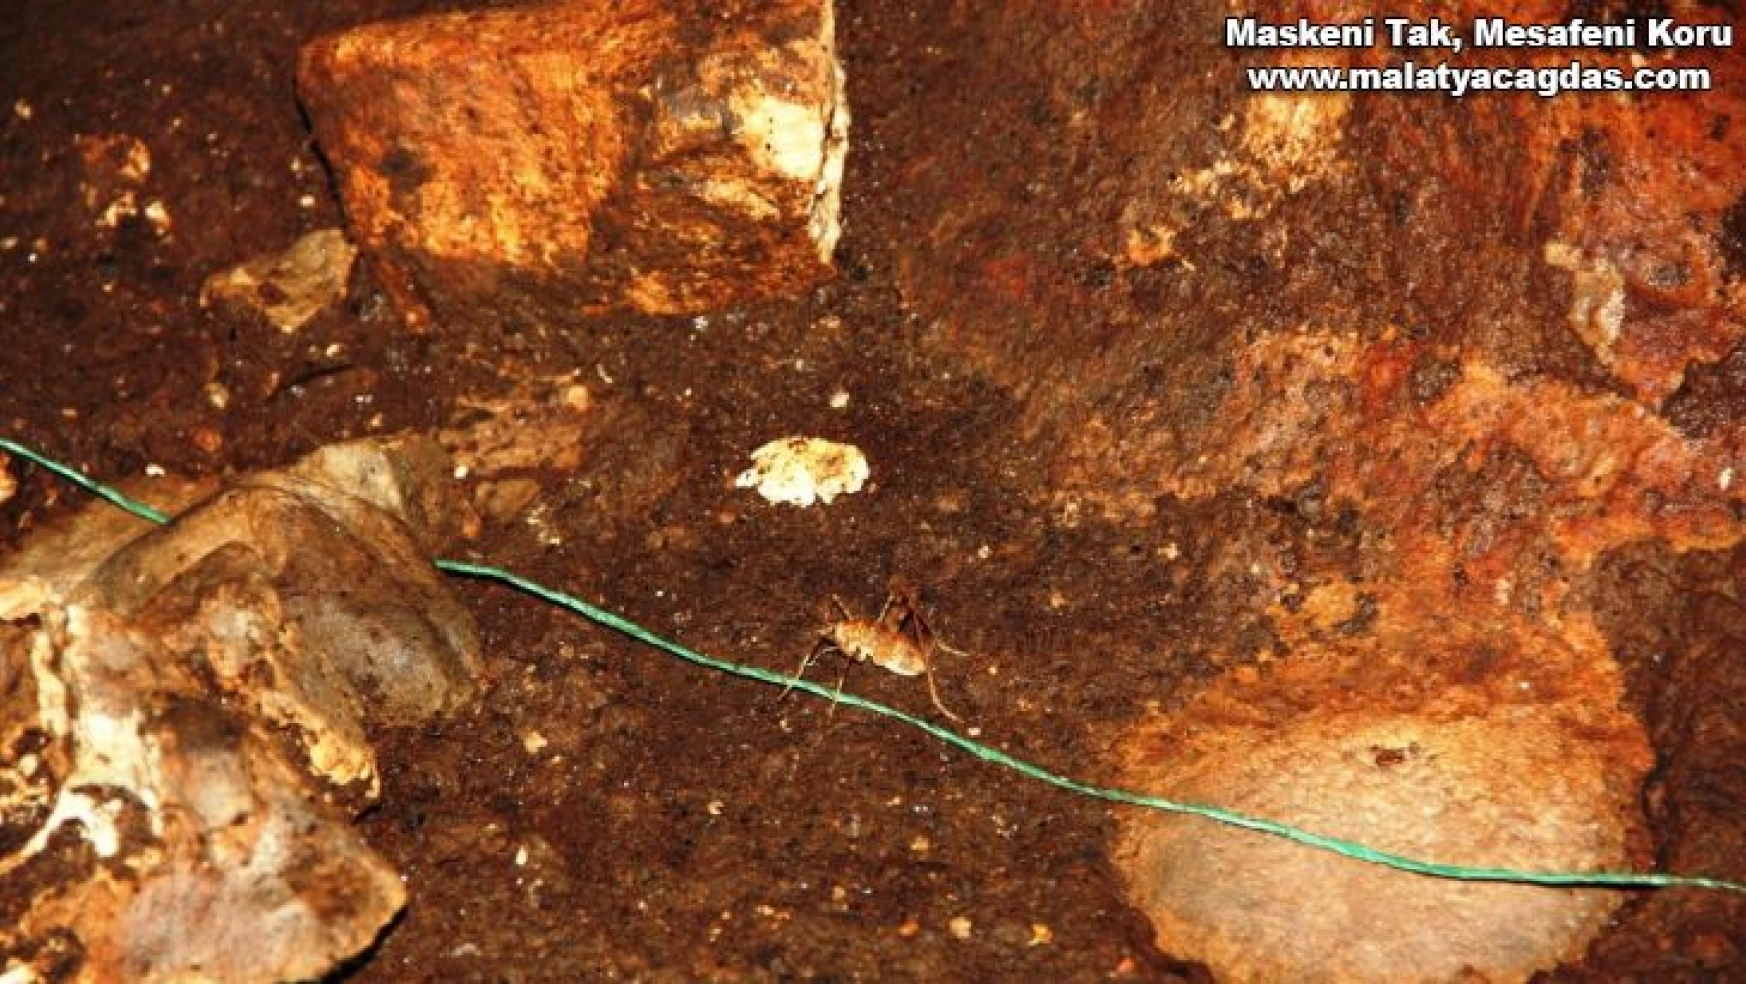 Güneydoğu Anadolu Bölgesinde ilk defa mağara çekirgesi görüldü